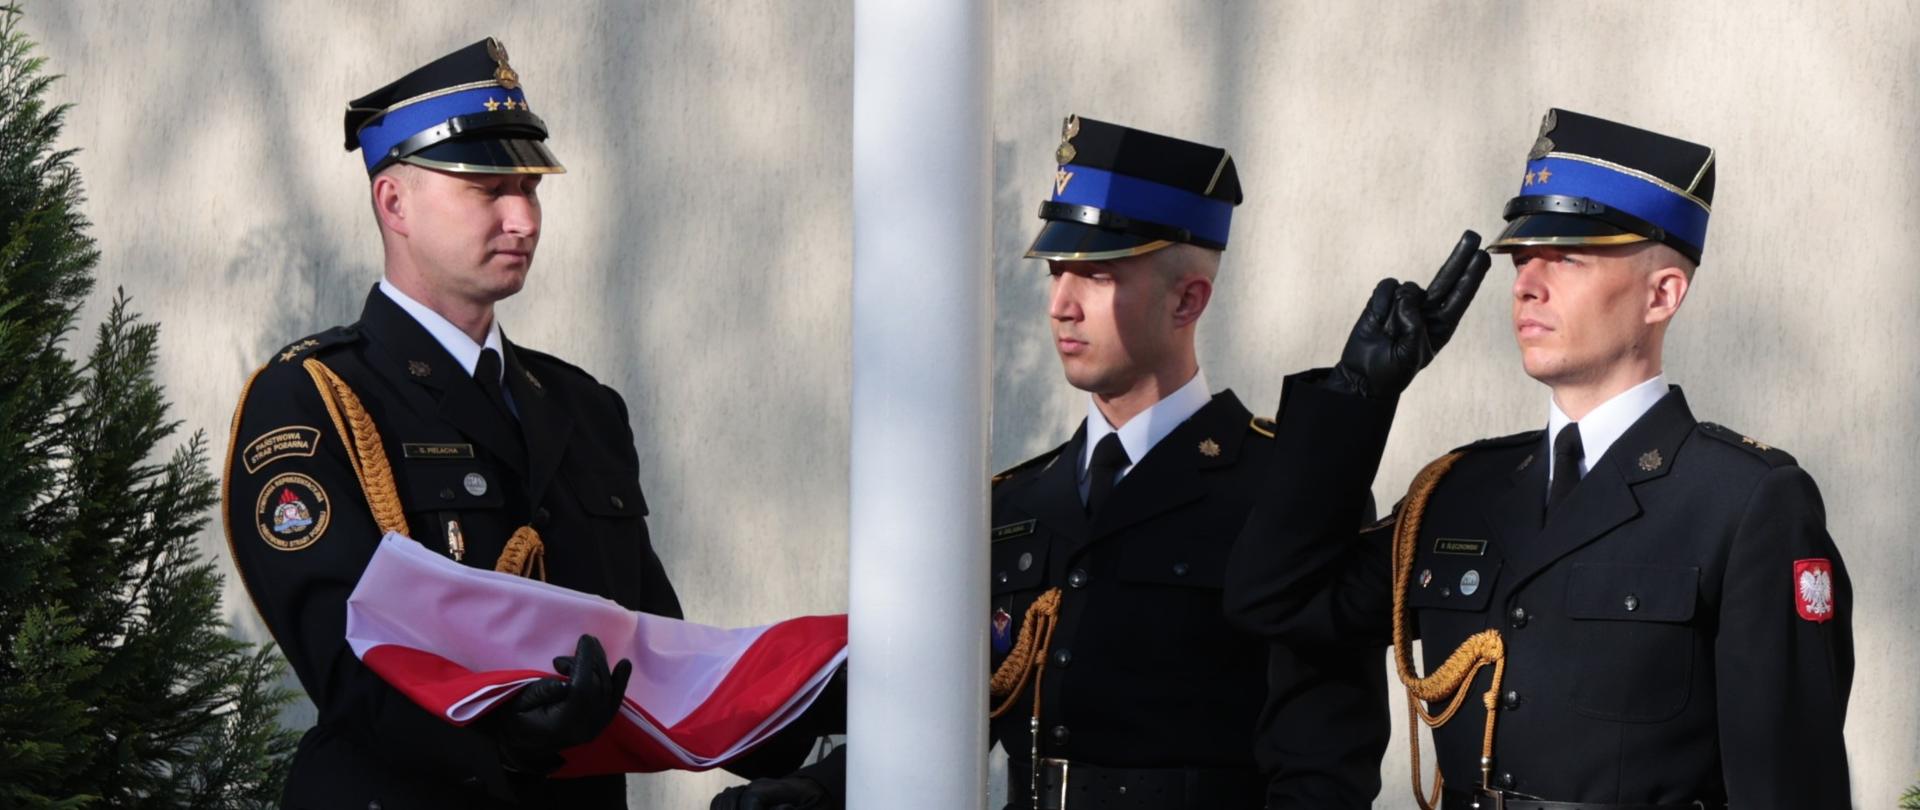 Poczet sztandarowy - 3 strażaków w mundurach galowych, strażak po lewej stronie trzyma na rękach złożoną flagę RP